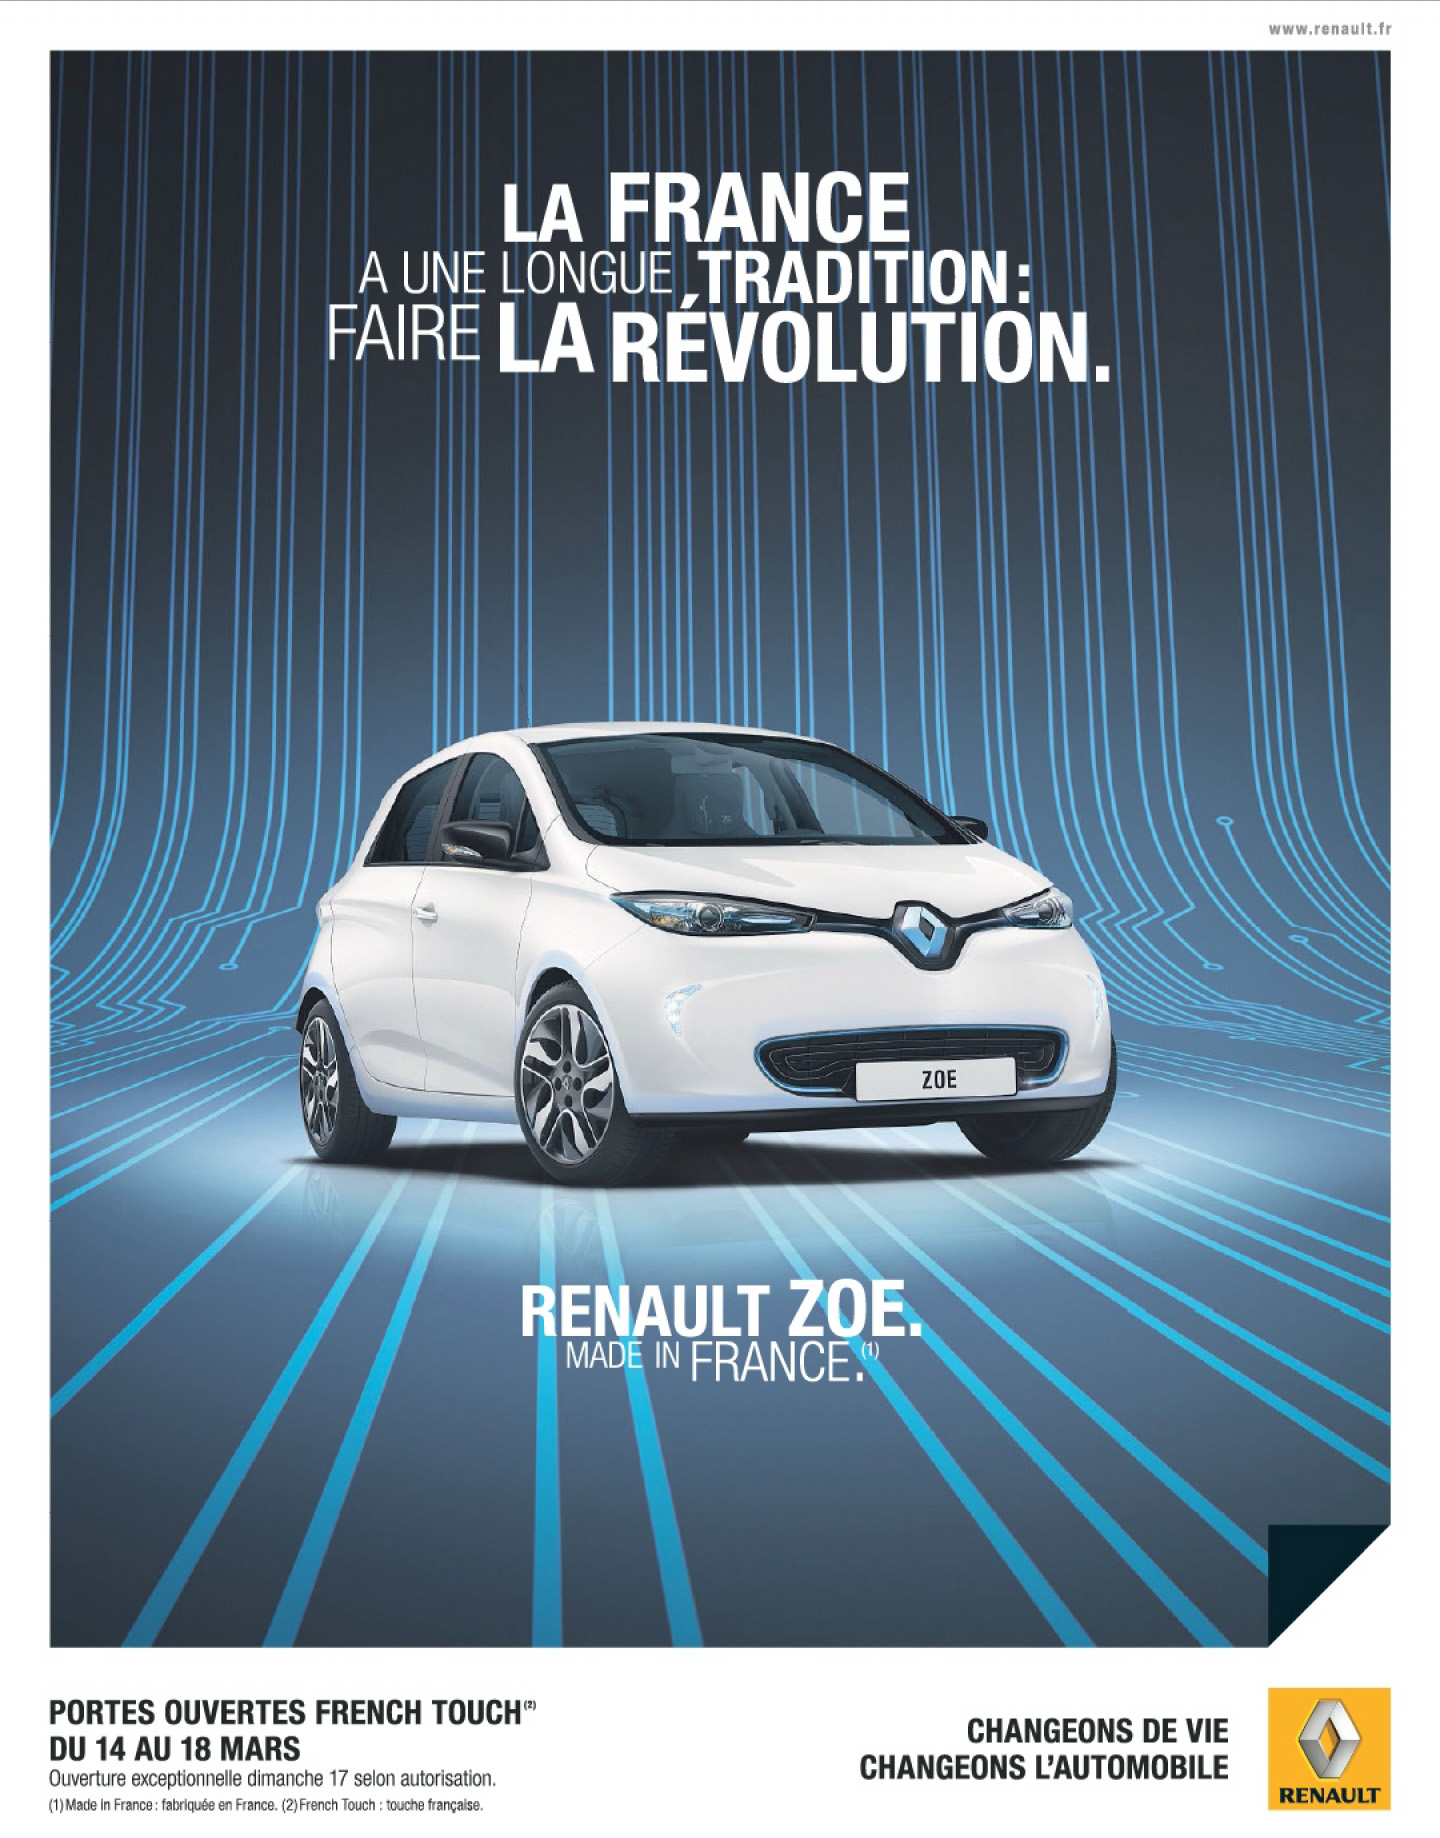 Gros boulot sur cette Renault ZOE - Atelier 2G Publicité